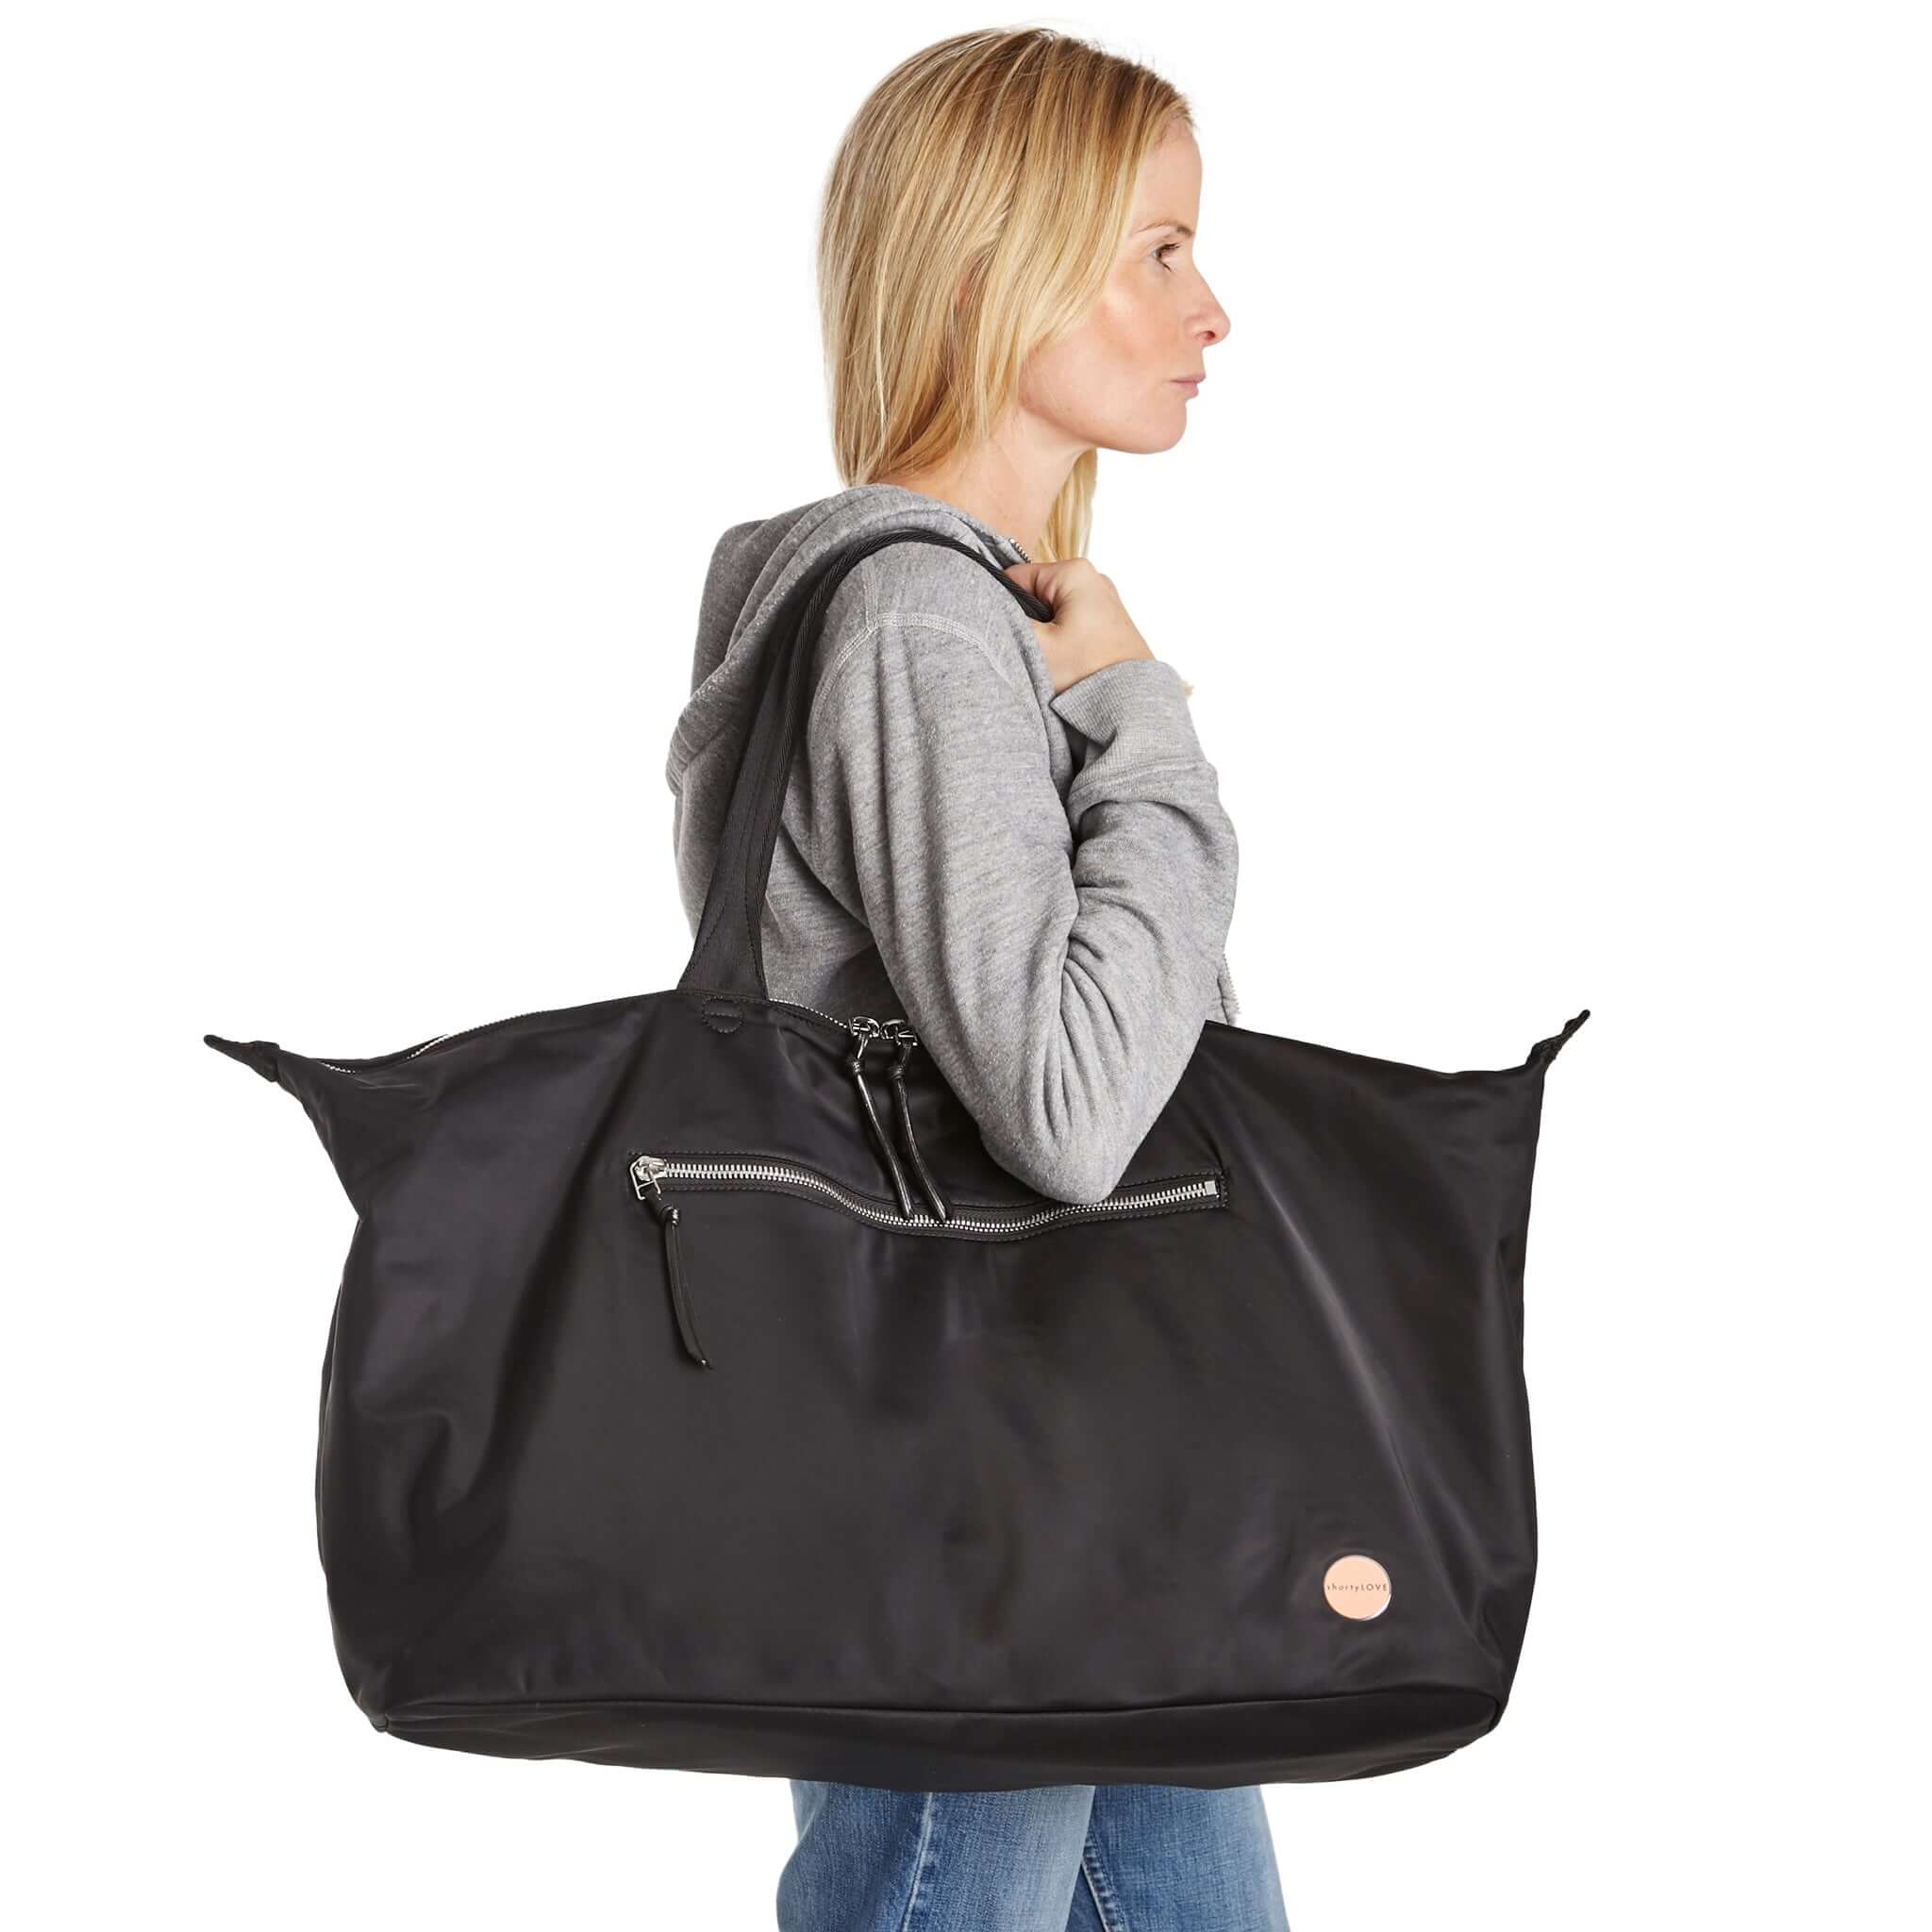 Weekender Bag Women, Duffle Bag For Women